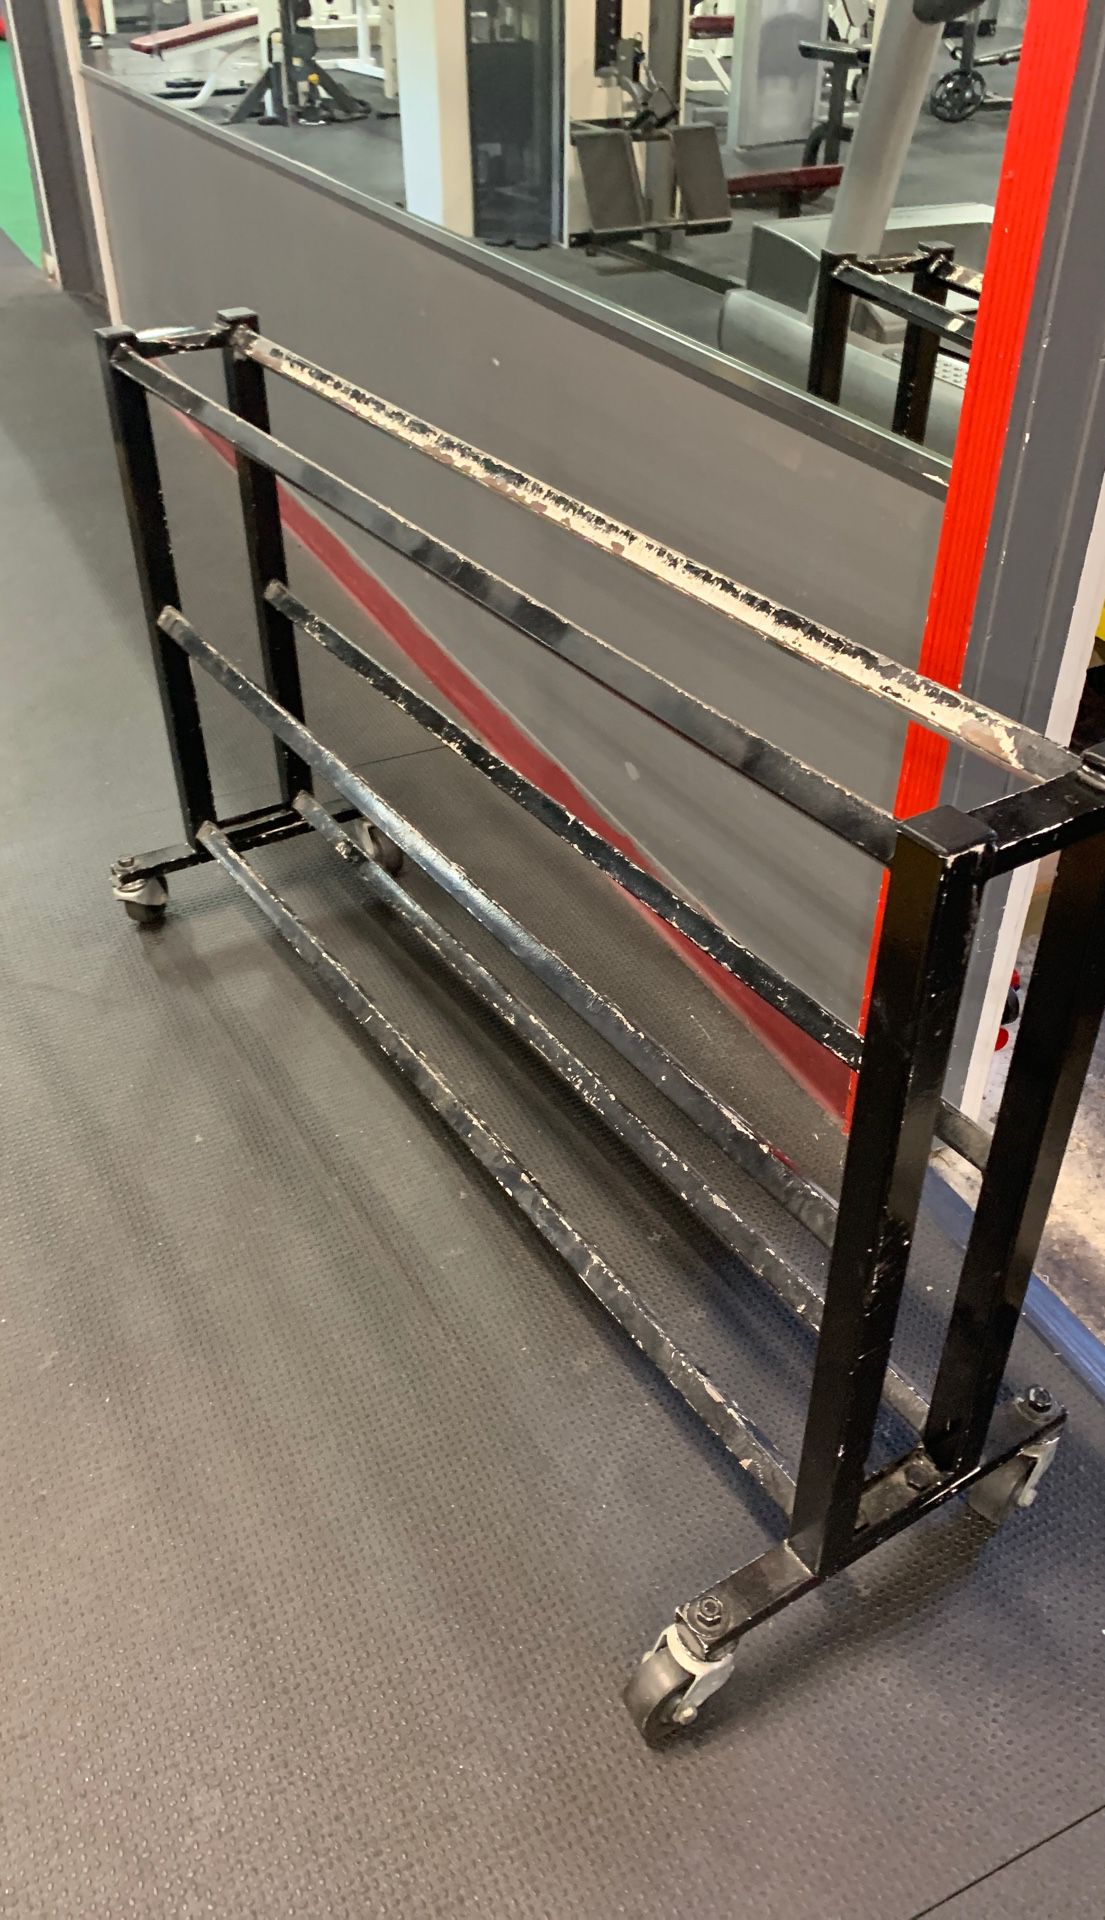 Gym rack storage